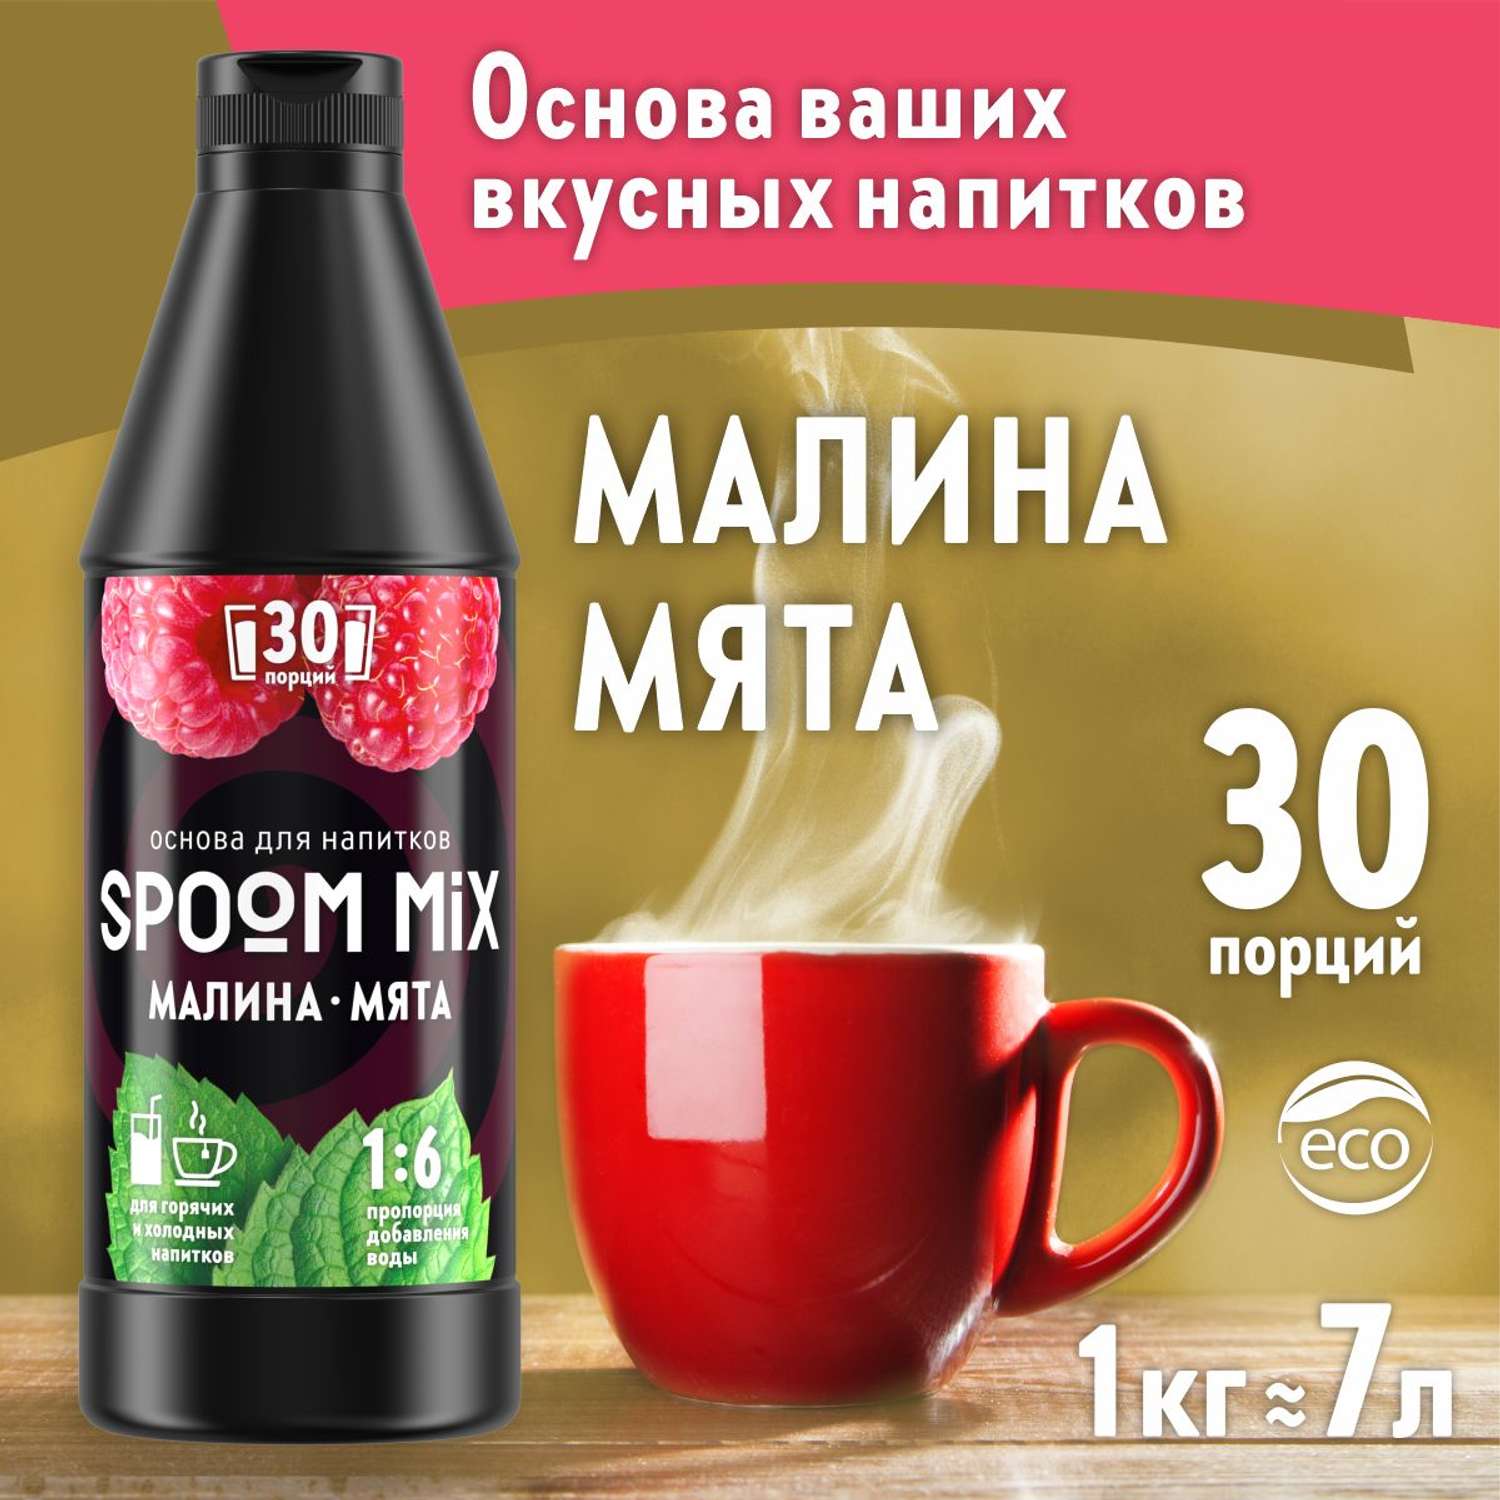 Основа для напитков SPOOM MIX Малина мята 1 кг - фото 1